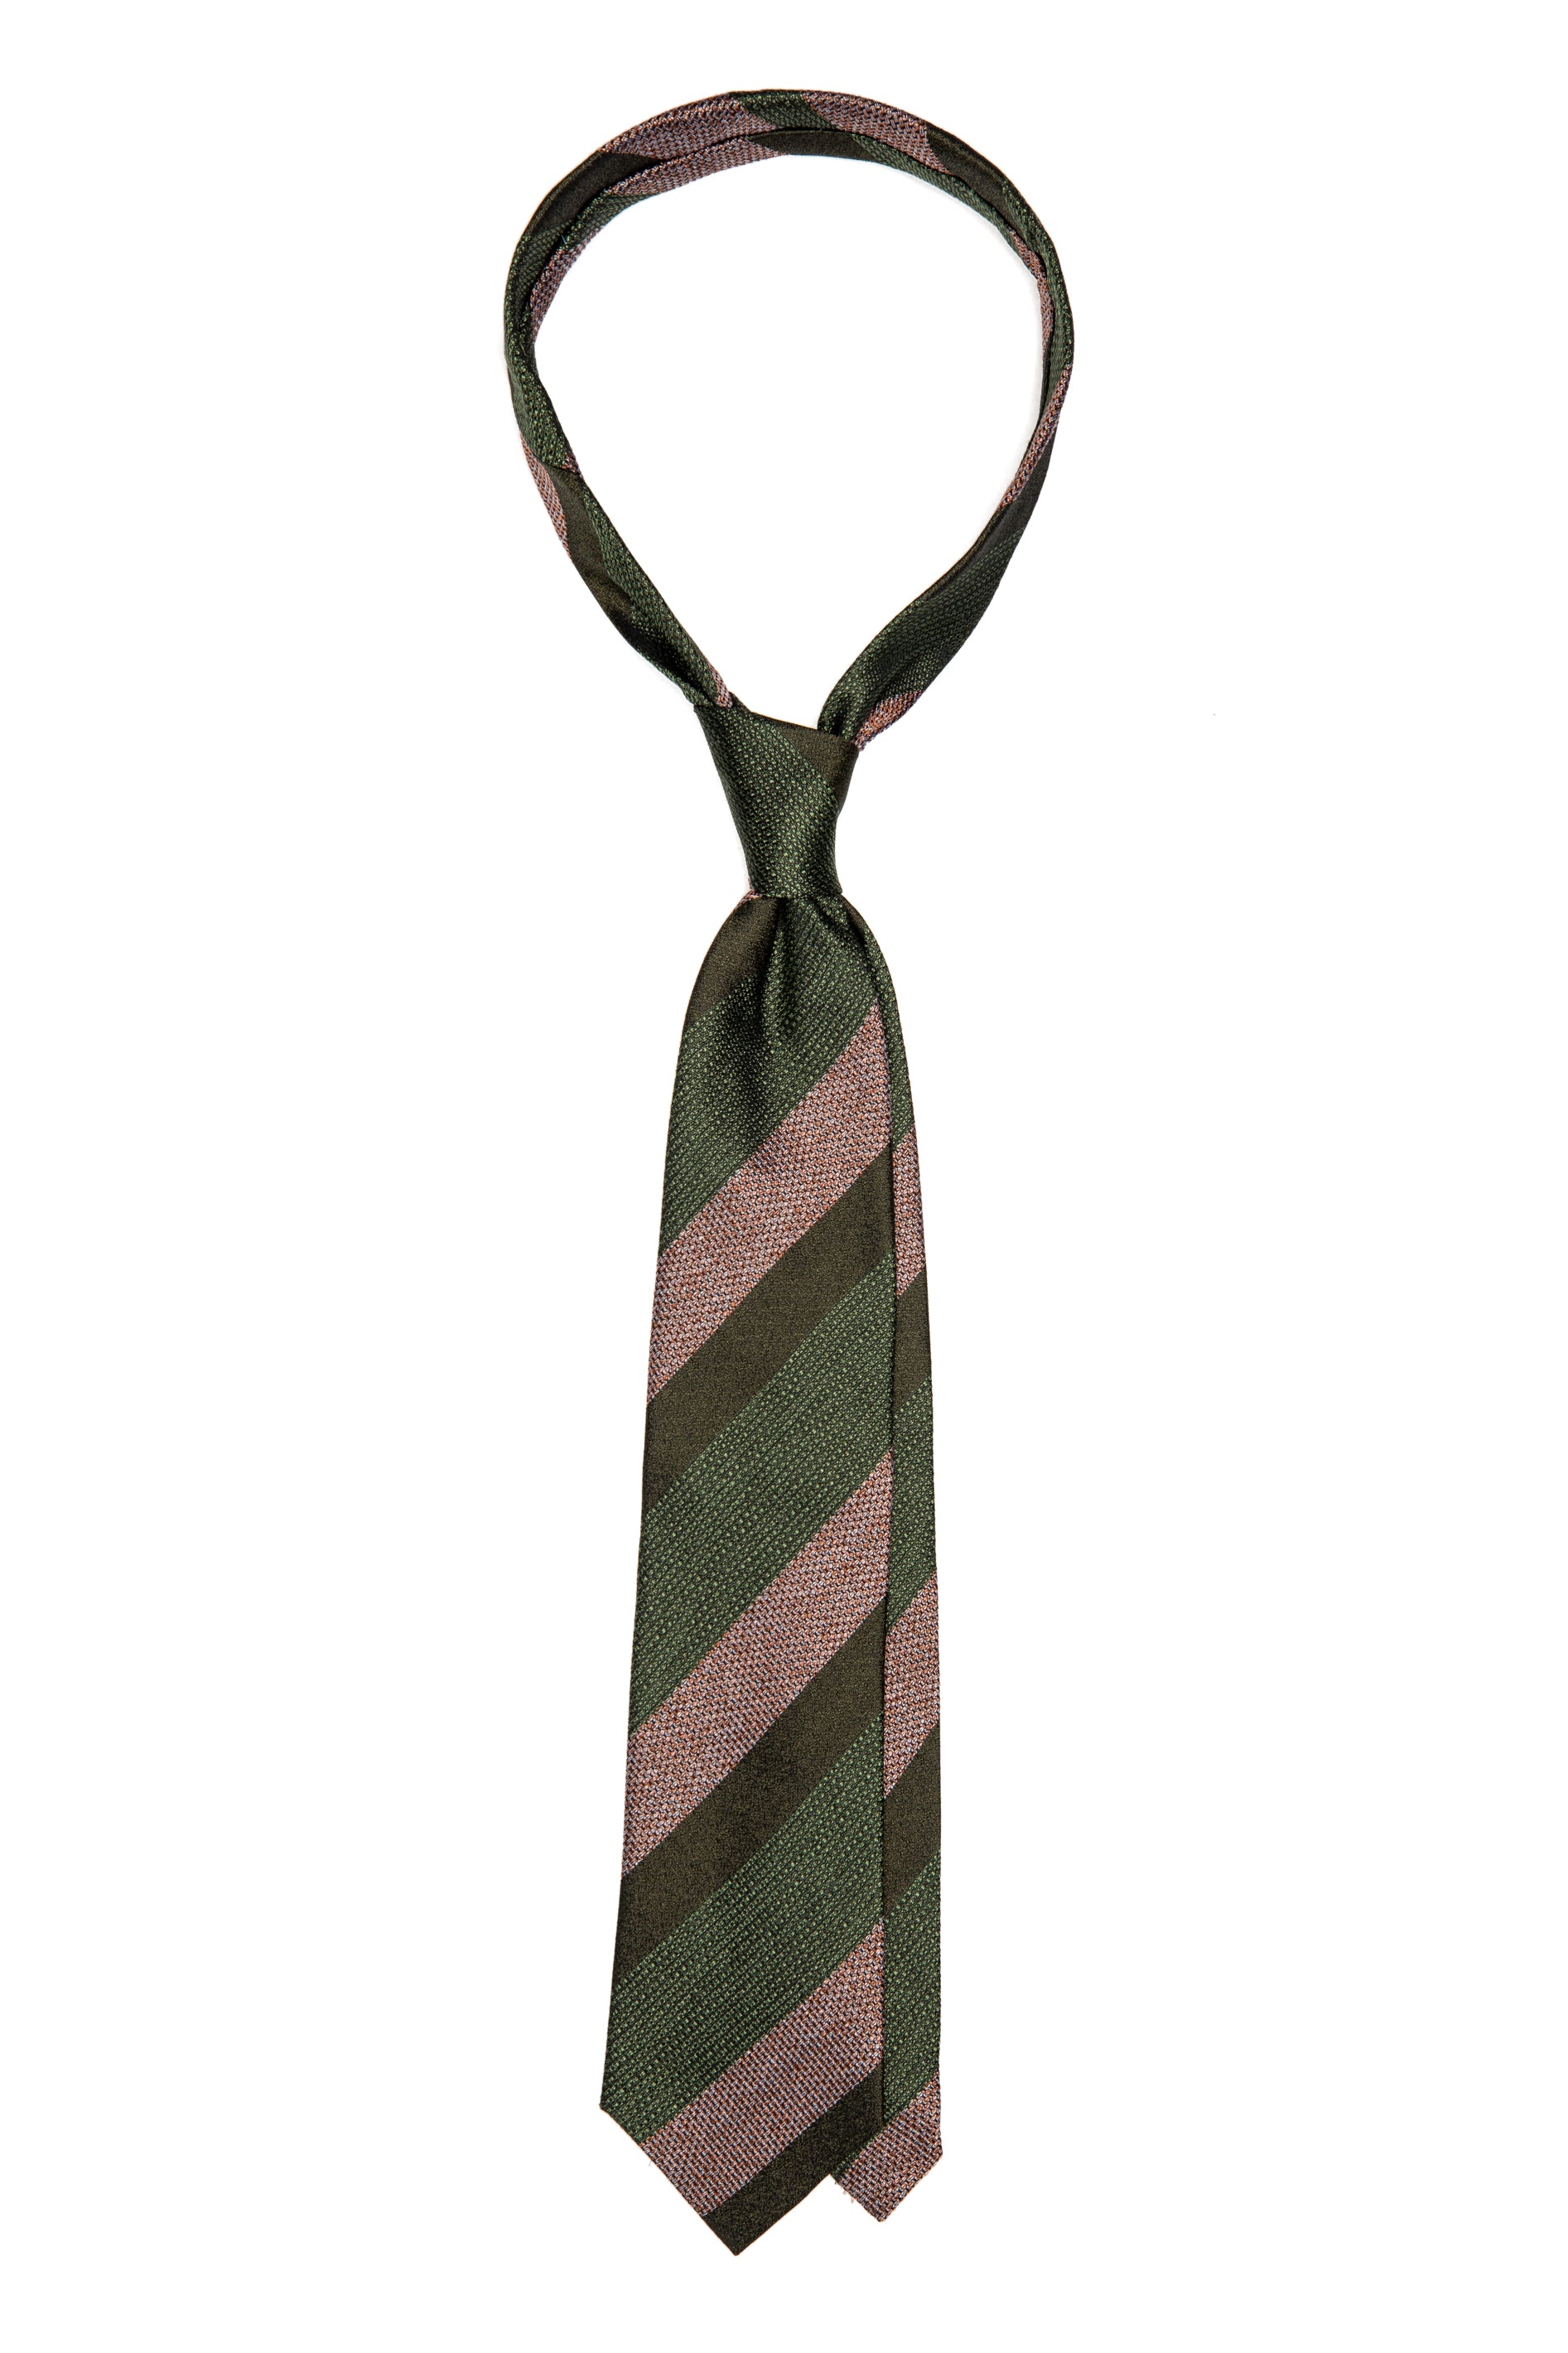 Cravatta in seta verde a righe larghe